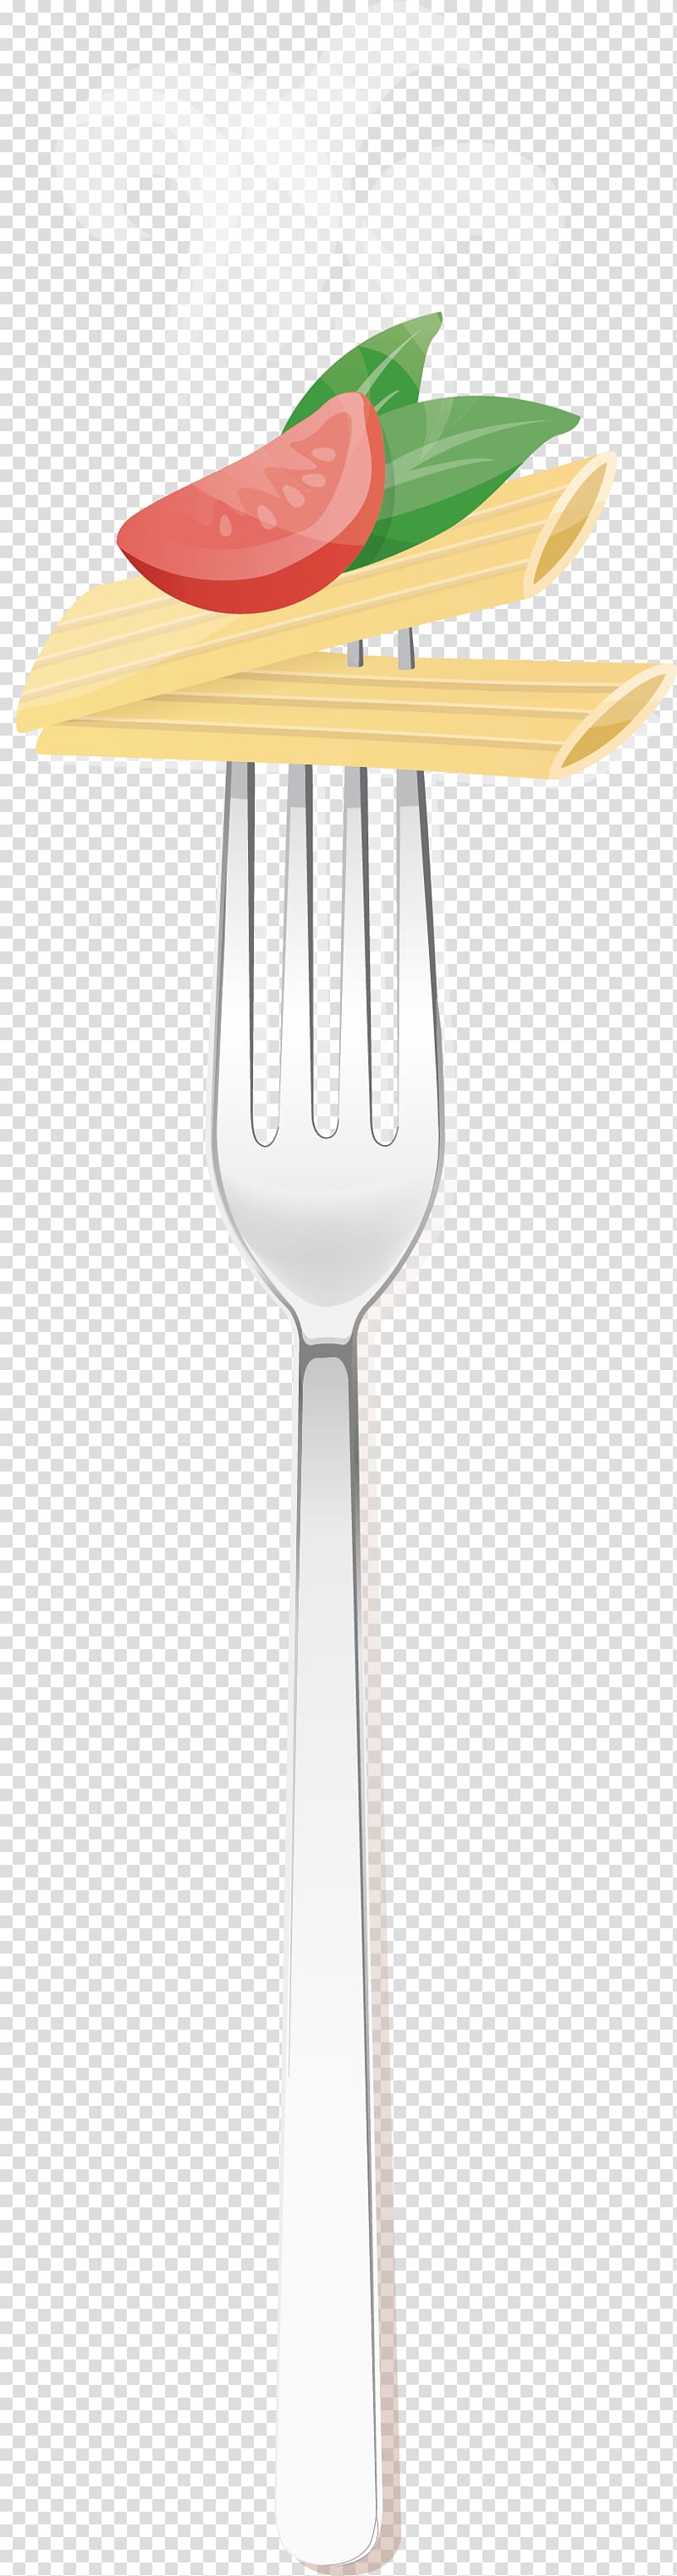 Fork Knife, fruit knife and fork transparent background PNG clipart